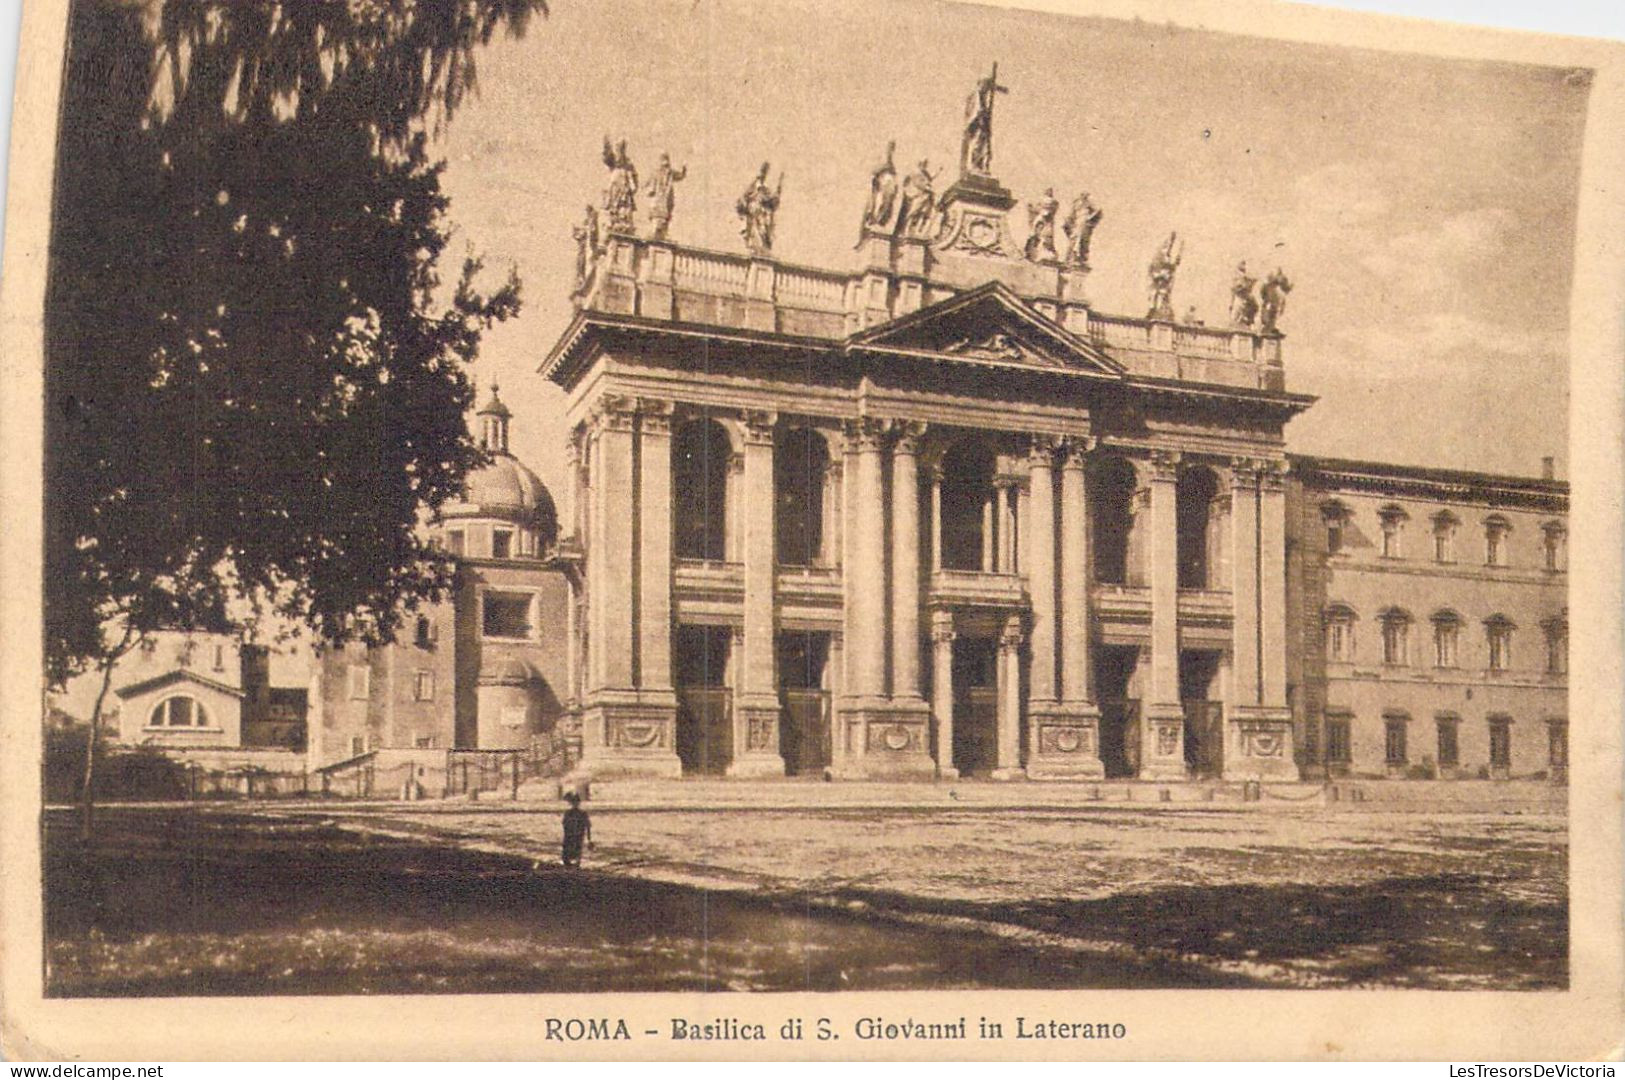 ITALIE - Roma - Basilica Di S. Giovanni In Laterano - Carte Postale Ancienne - Andere Monumente & Gebäude